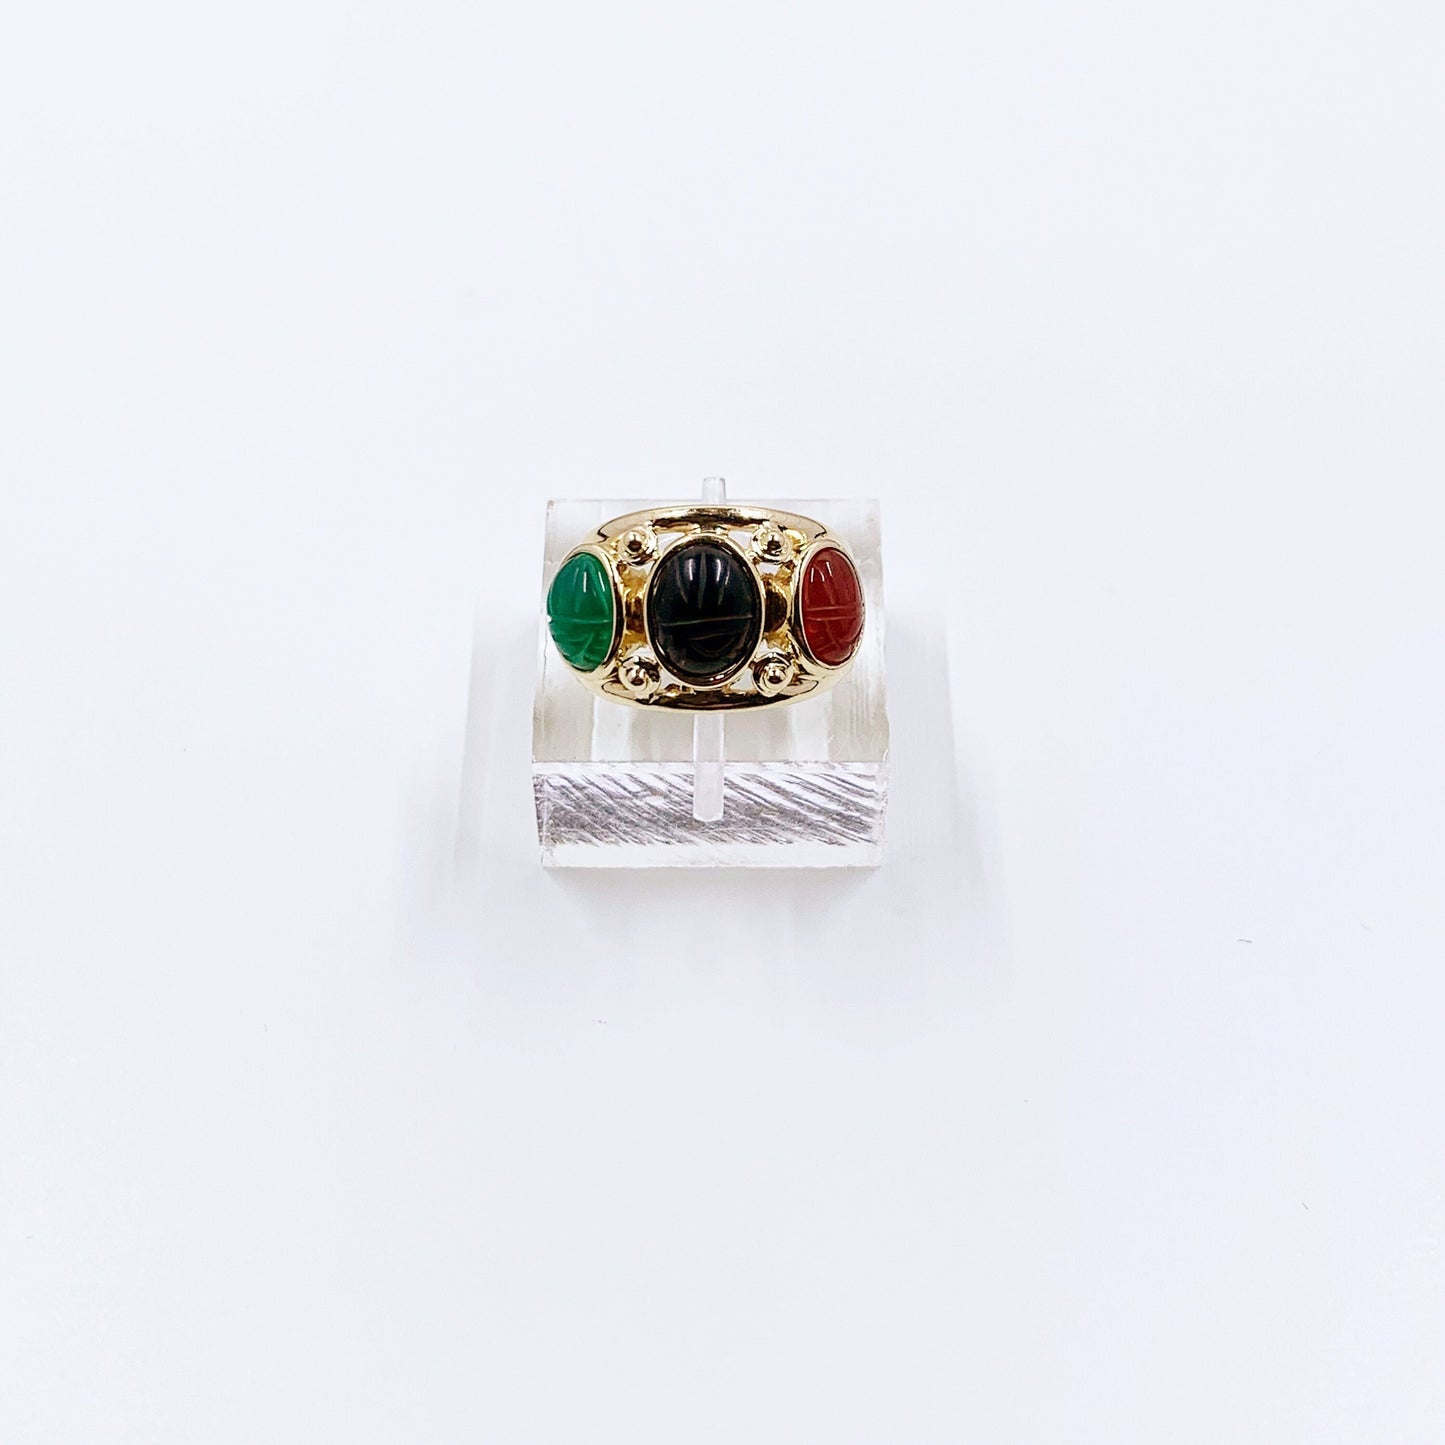 Vintage 14k Gold Three Stone Scarab Ring | Scarab Statement Ring | Carved Scarab Ring | Size 7/14 Ring